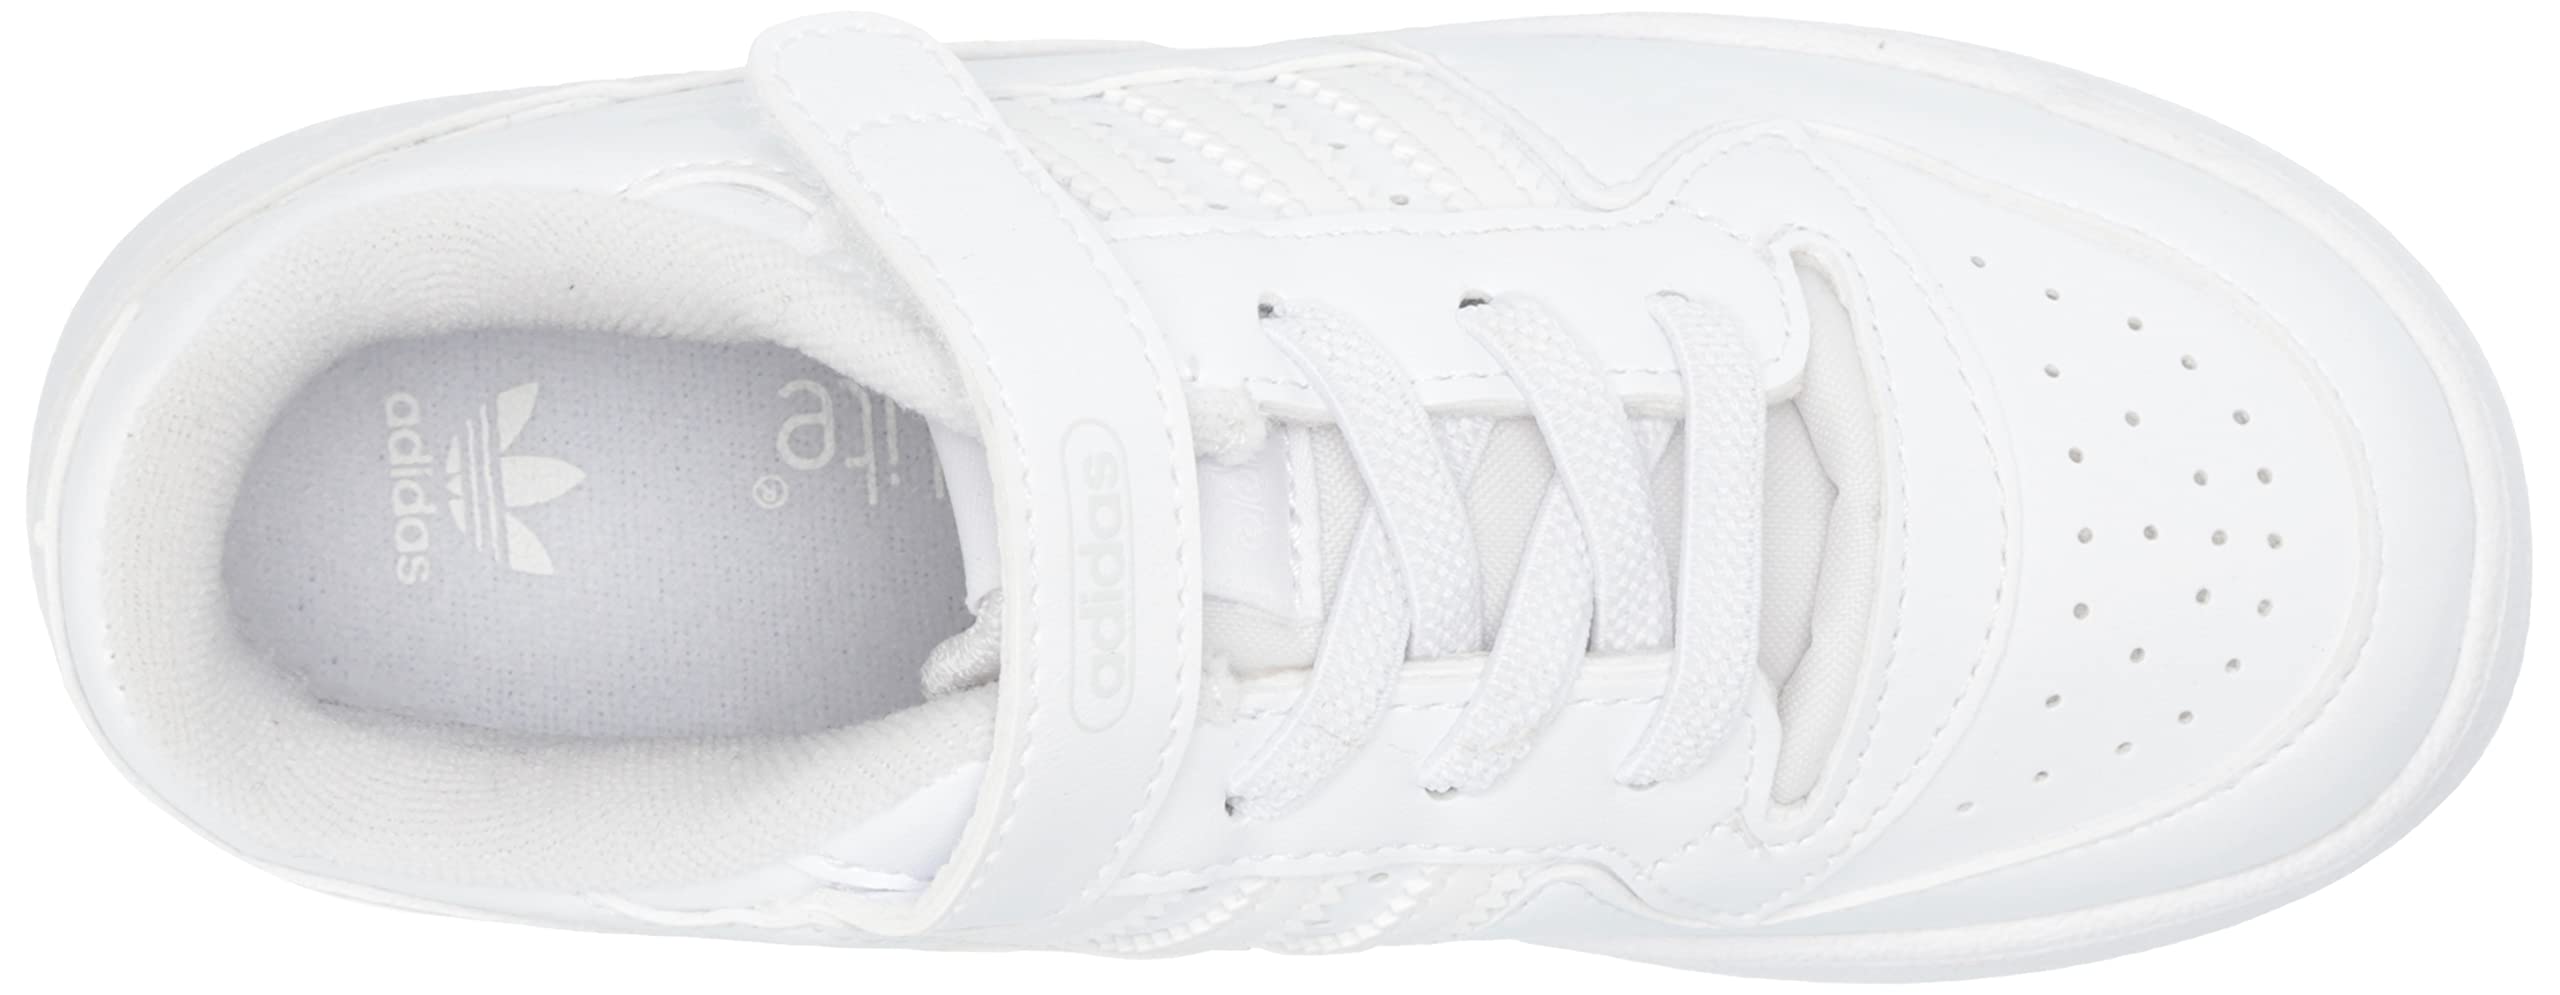 adidas Originals Unisex-Child Forum Low Sneaker